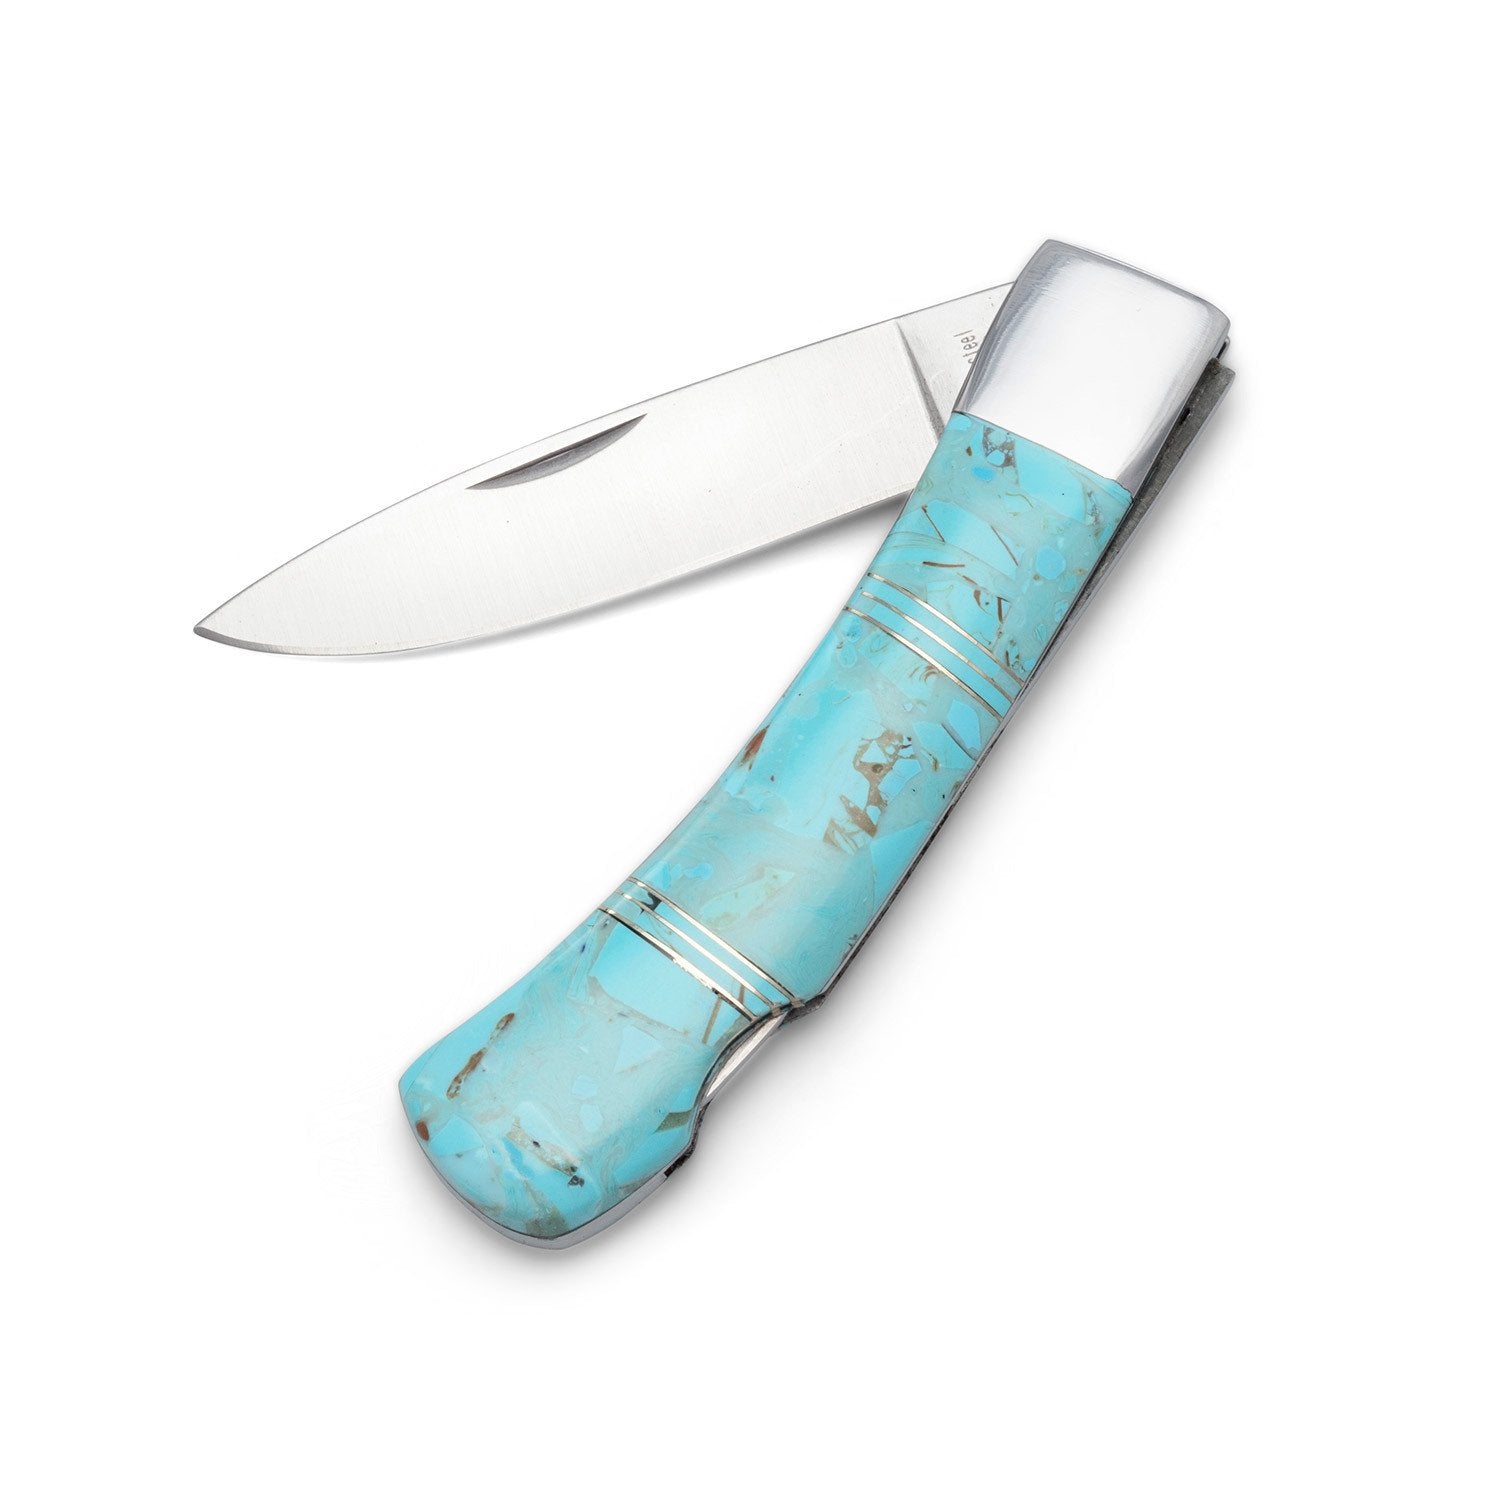 Stainless Steel Pocket Knife with Imitation Turquoise - Joyeria Lady